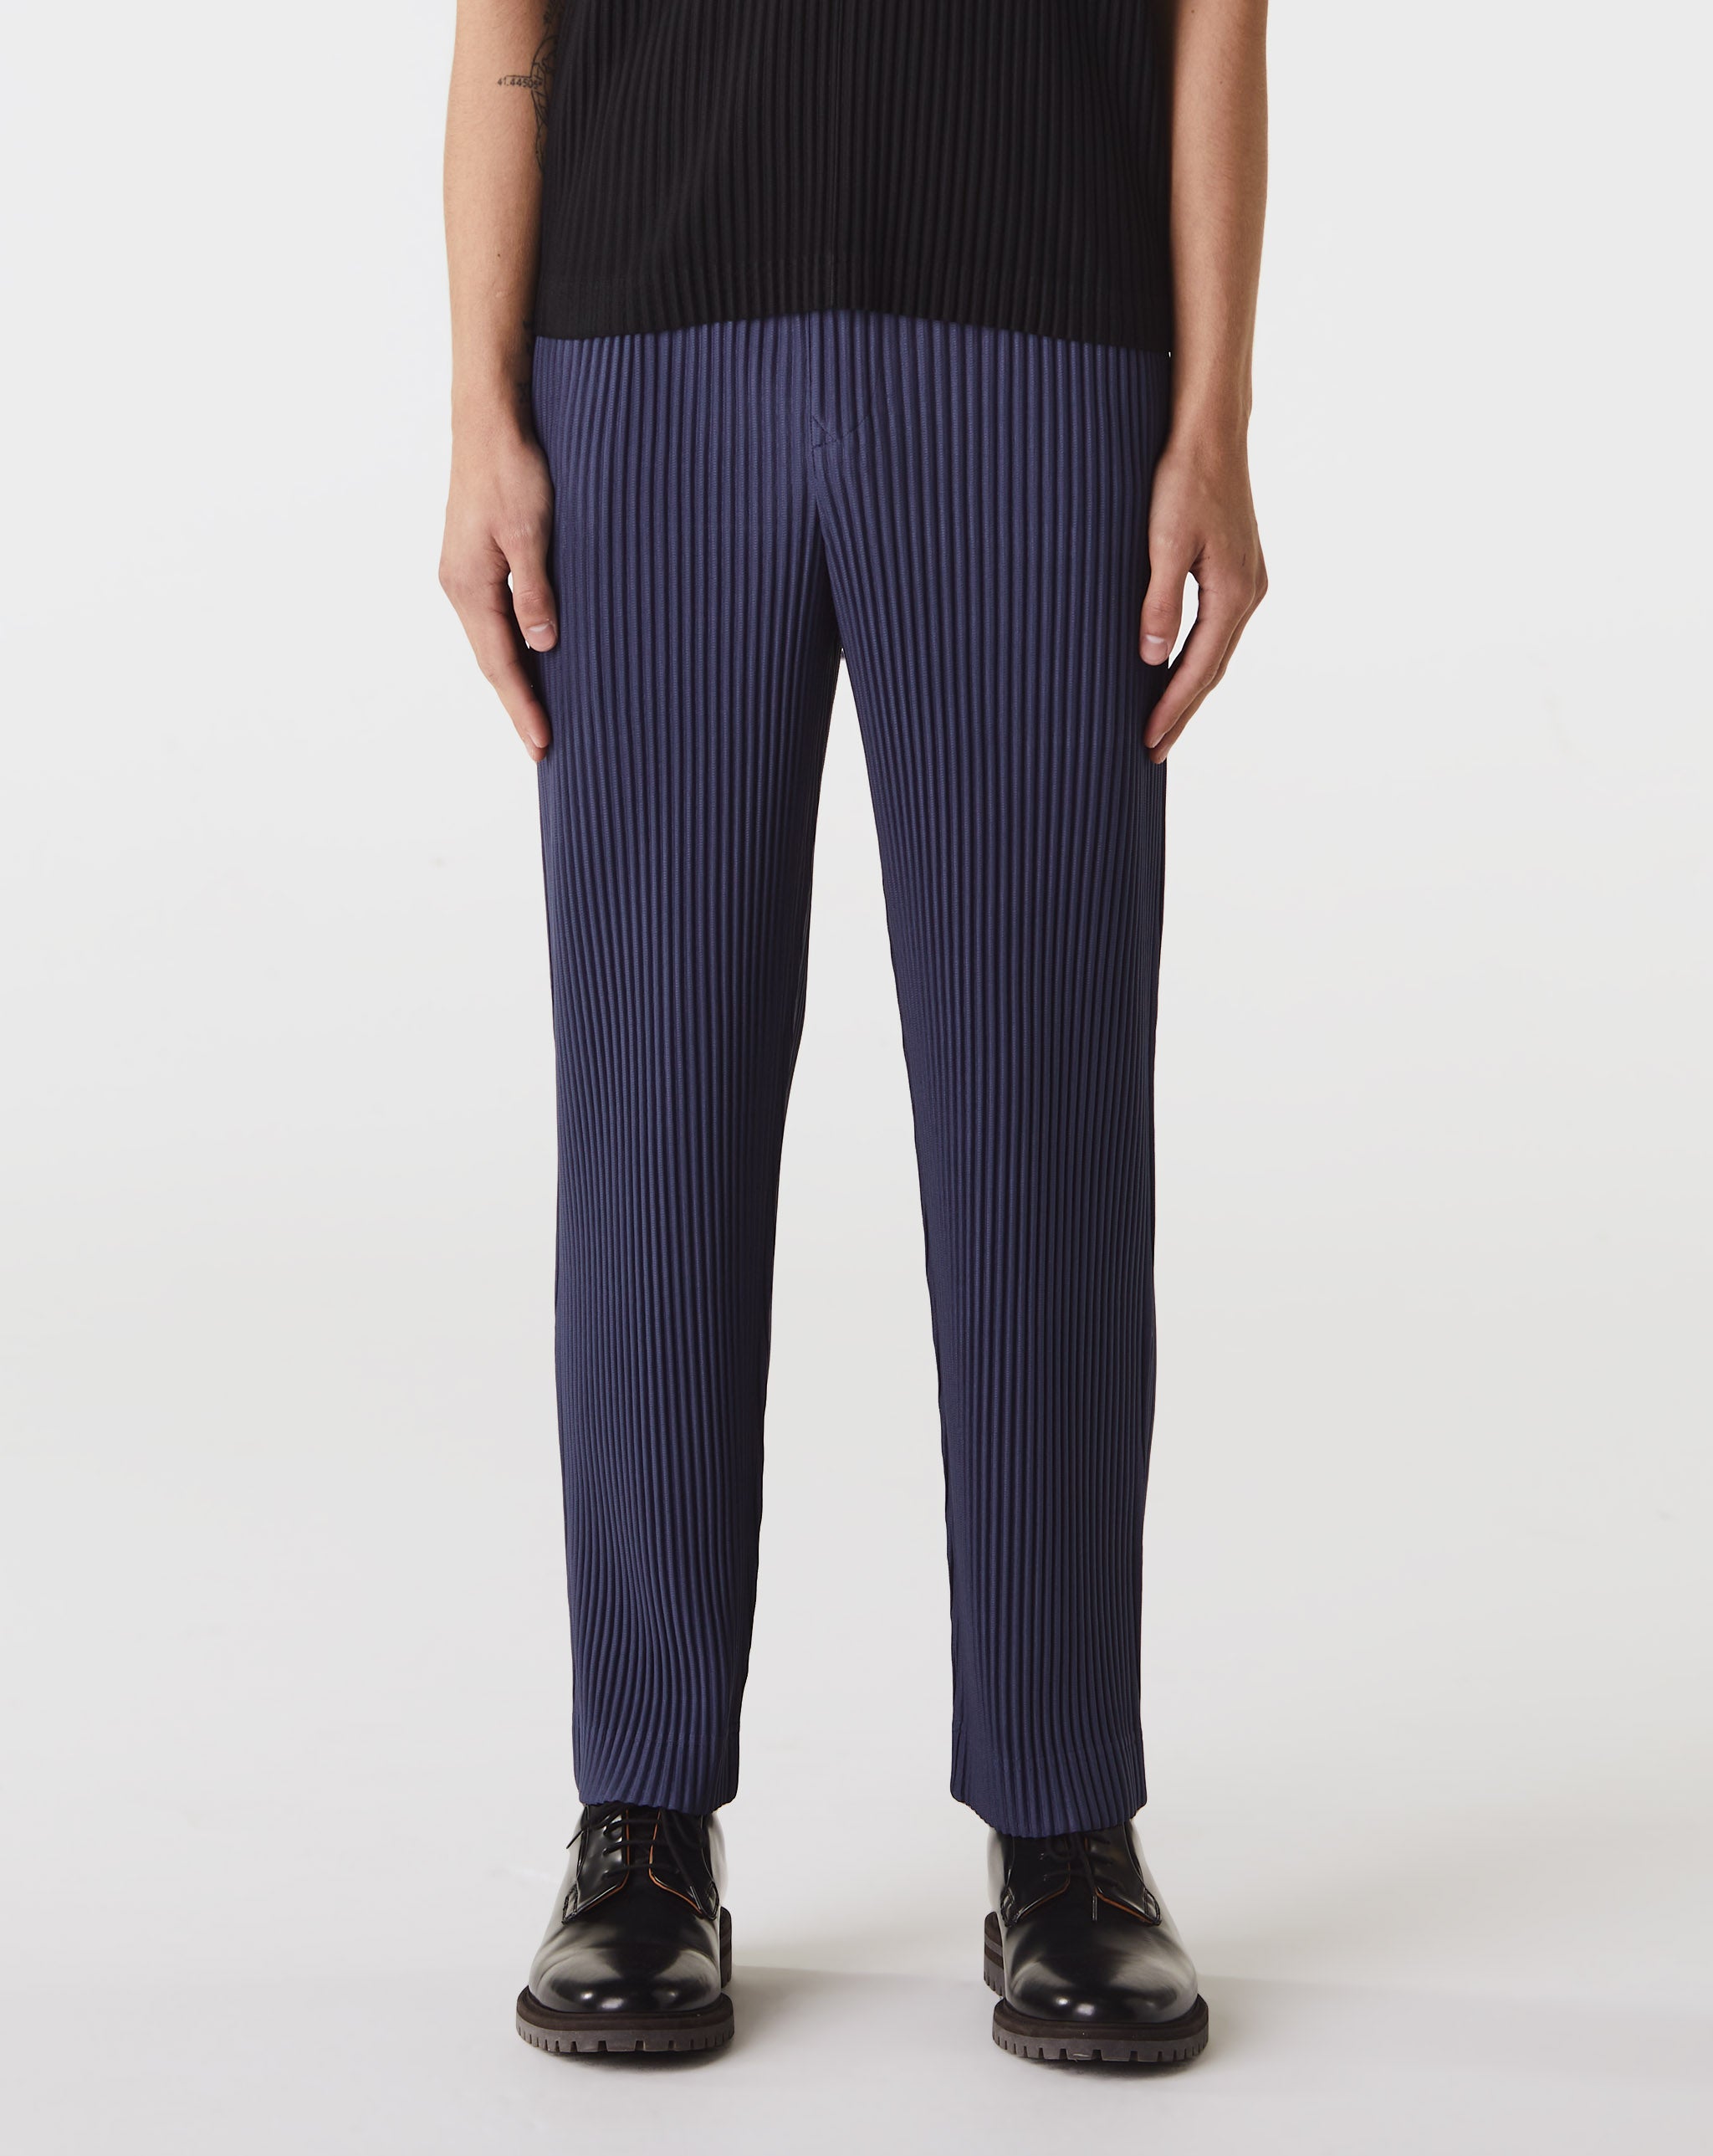 Camo Painter Pants Tailored Pleats 2  - Cheap 127-0 Jordan outlet